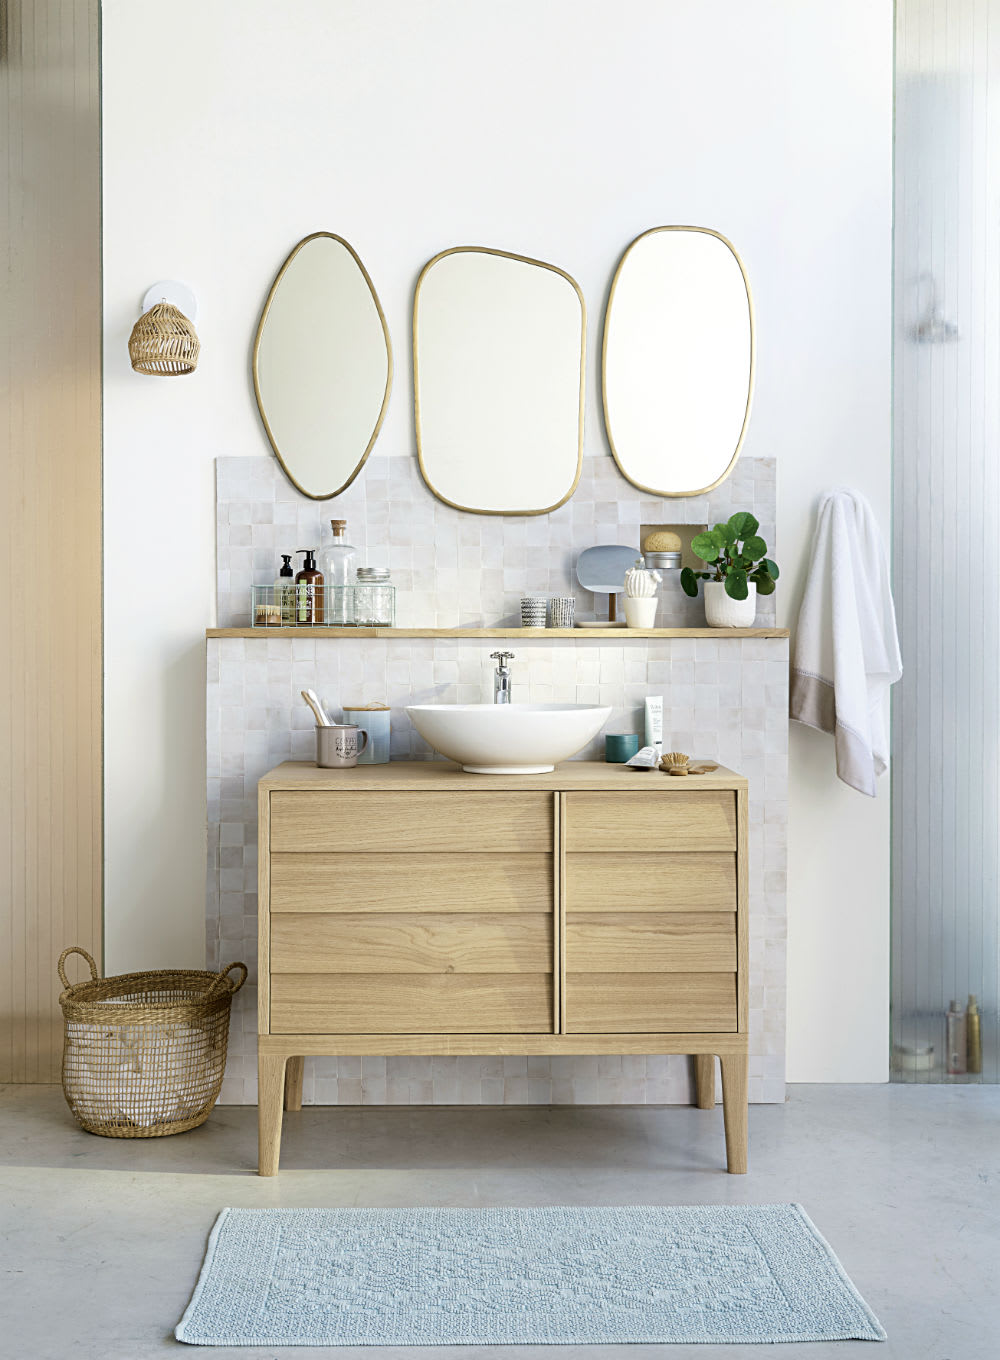 Miroir salle de bains : inspiration déco  Décoration salle de bain, Miroir  rond salle de bains, Miroir de salle de bain